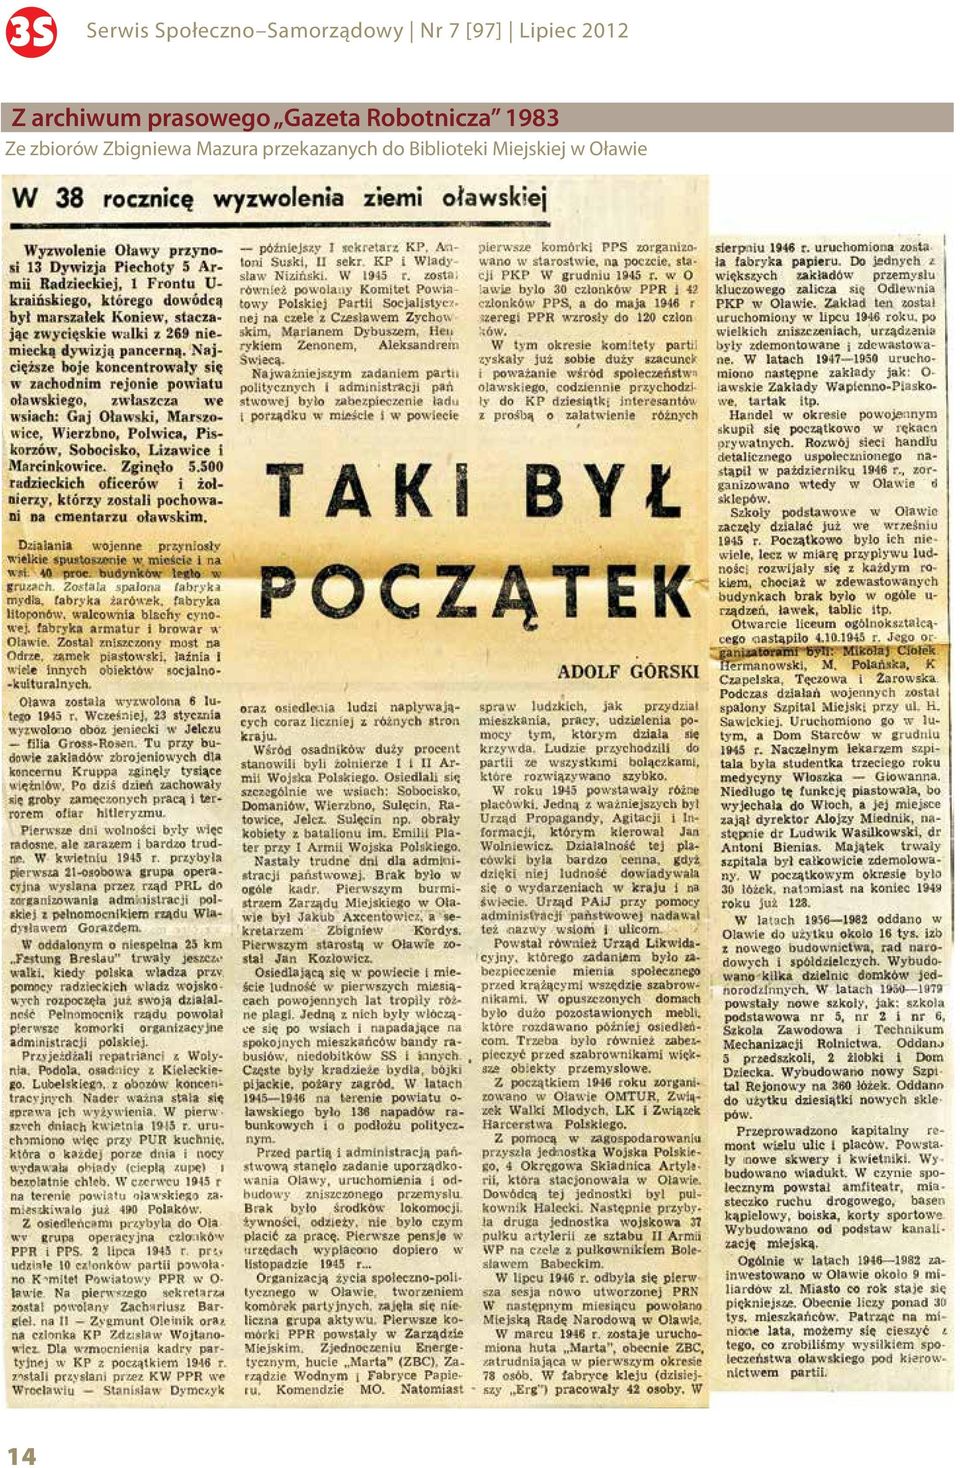 Robotnicza 1983 Ze zbiorów Zbigniewa